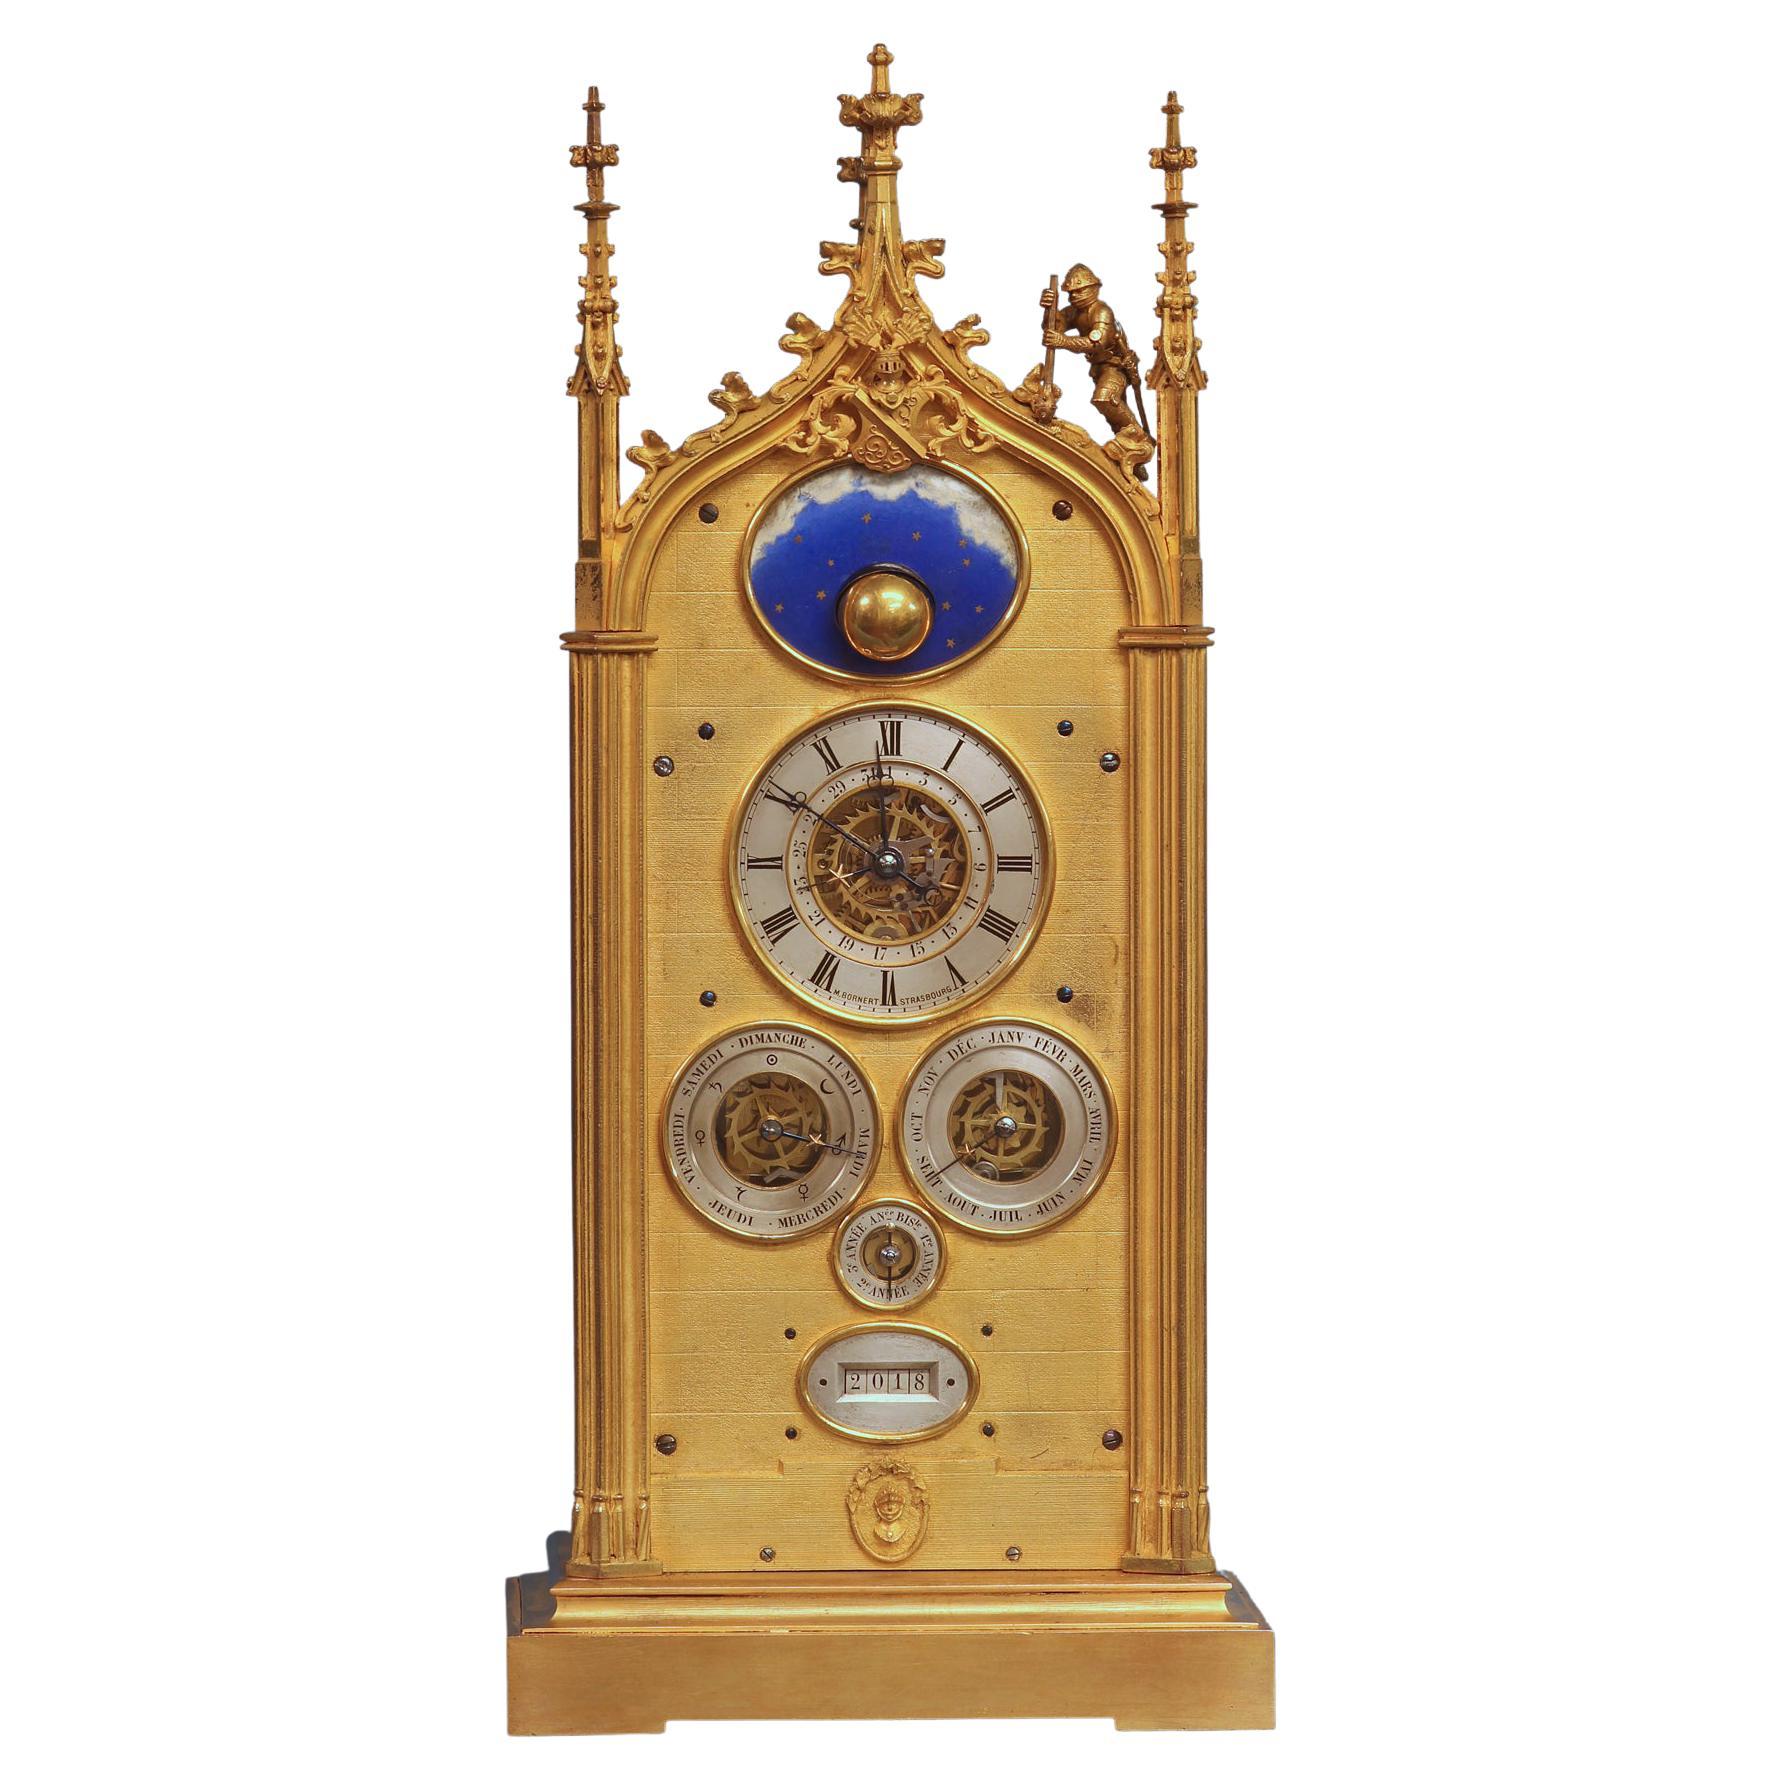 Pendule de cheminée à calendrier perpétuel à plusieurs cadrans français avec lune tournante, vers 1850